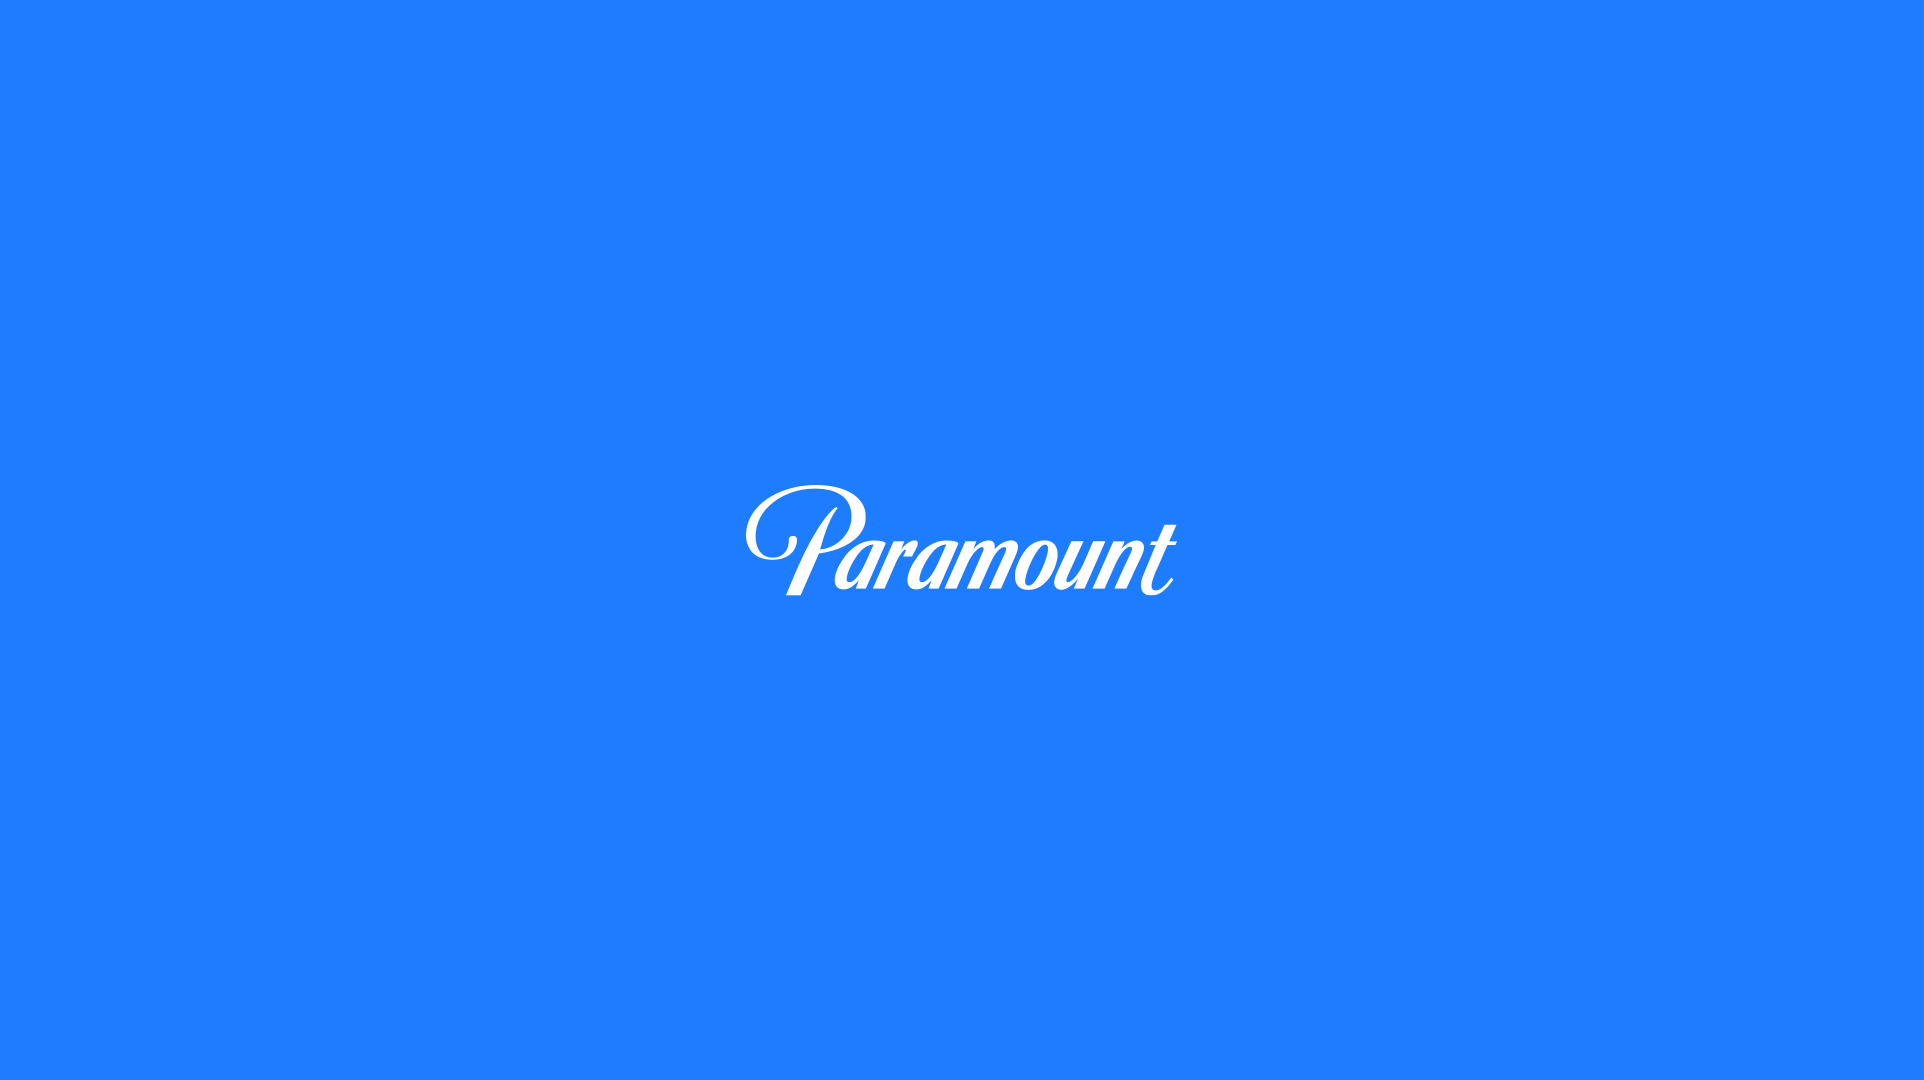 Paramount_logotype03